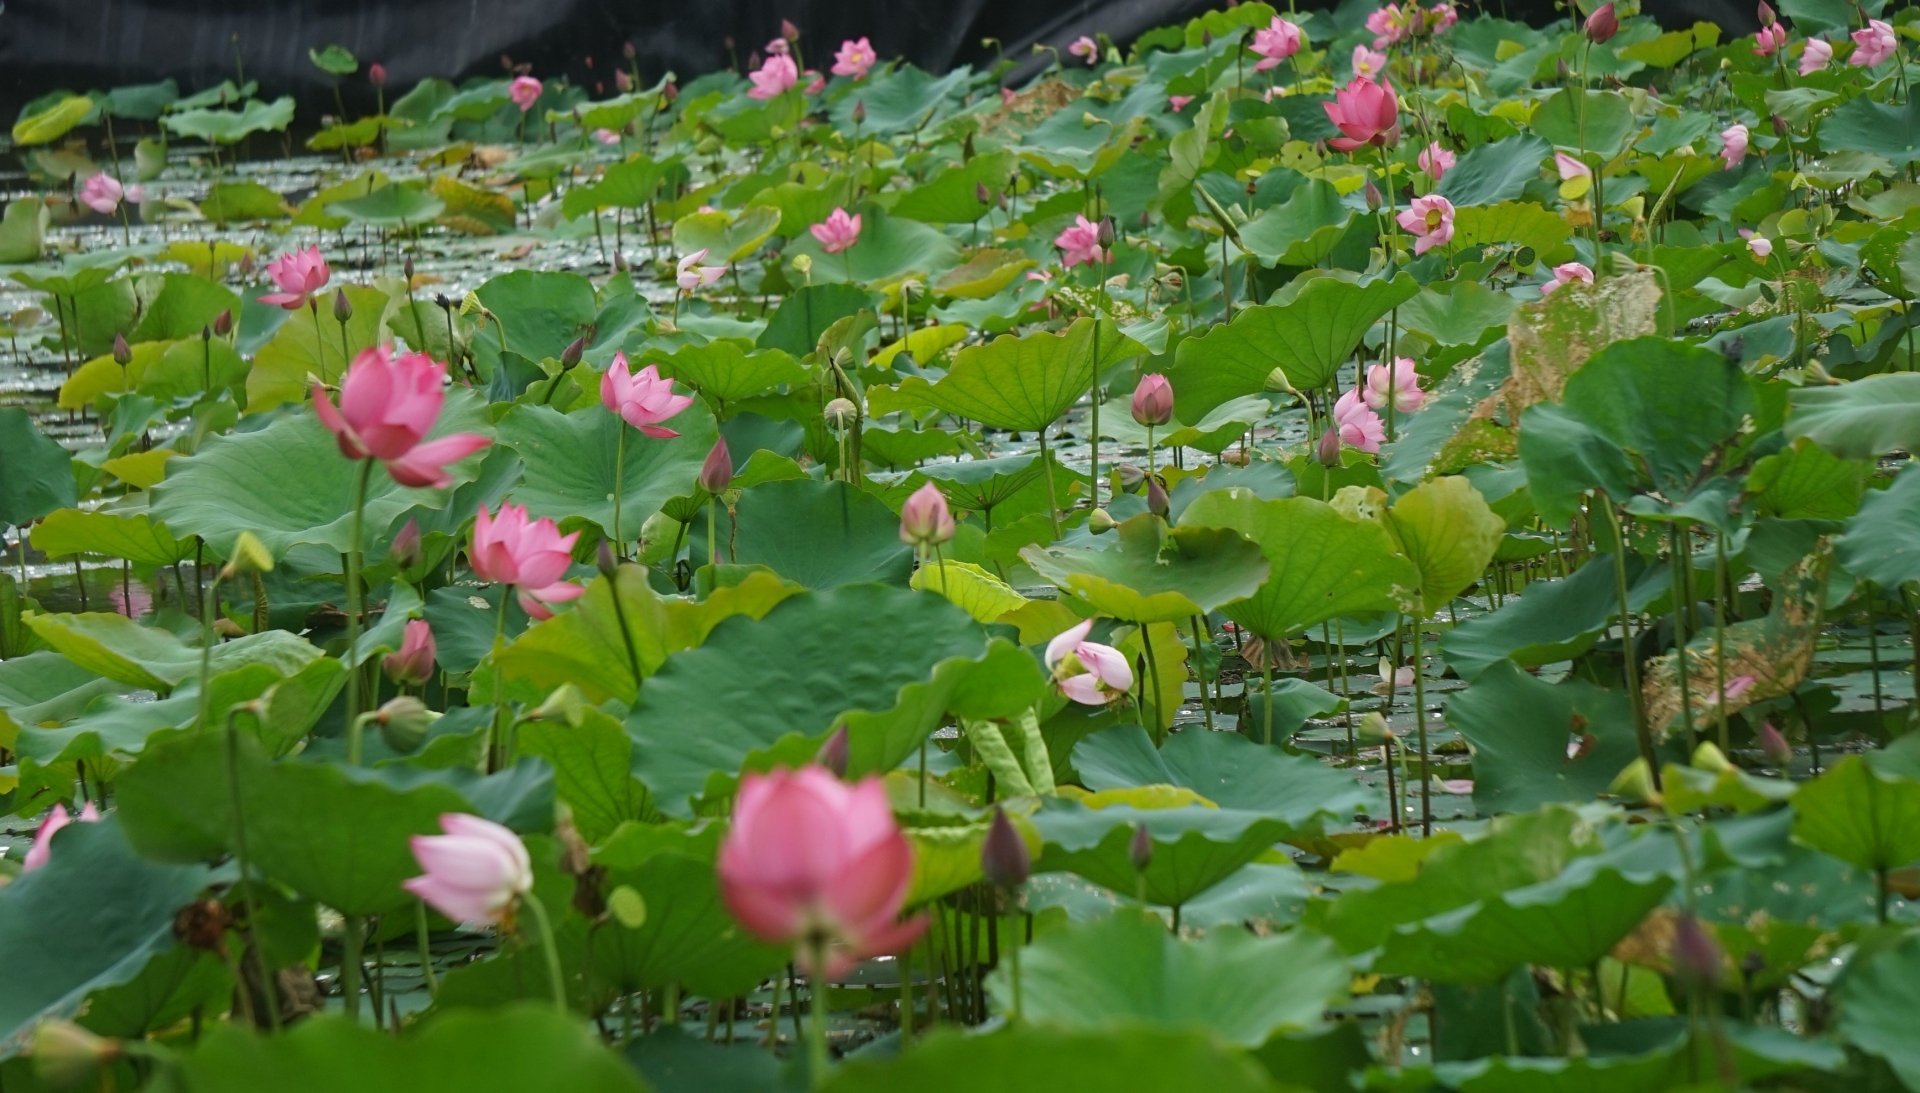 Hoa sen được trồng tại xã Kim Liên, huyện Nam Đàn, tỉnh Nghệ An từ bao đời nay. Tên làng, tên các địa danh cũng gắn với hoa sen. Ngoài loại sen truyền thống có sắc hồng, năm nay xuất hồ sen còn điểm thêm một số bông sen màu trắng tinh khôi.